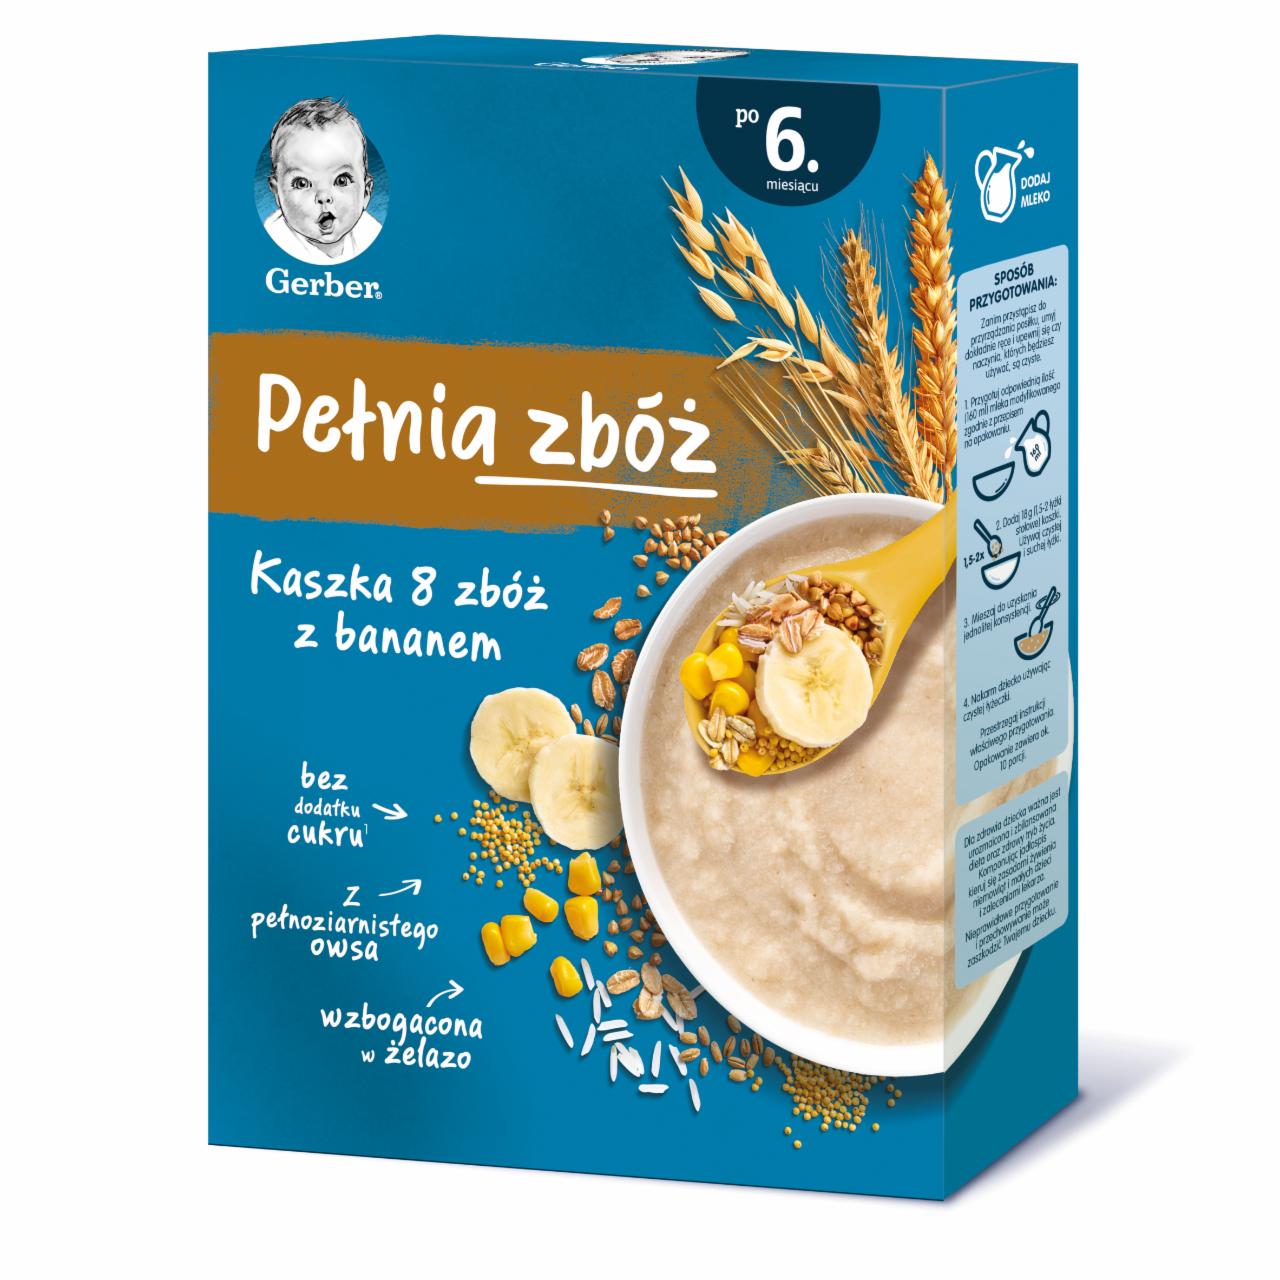 Photo - Gerber Pełnia zbóż 8 Cereals Porridge with Banana for Infants after 6. Months Onwards 180 g